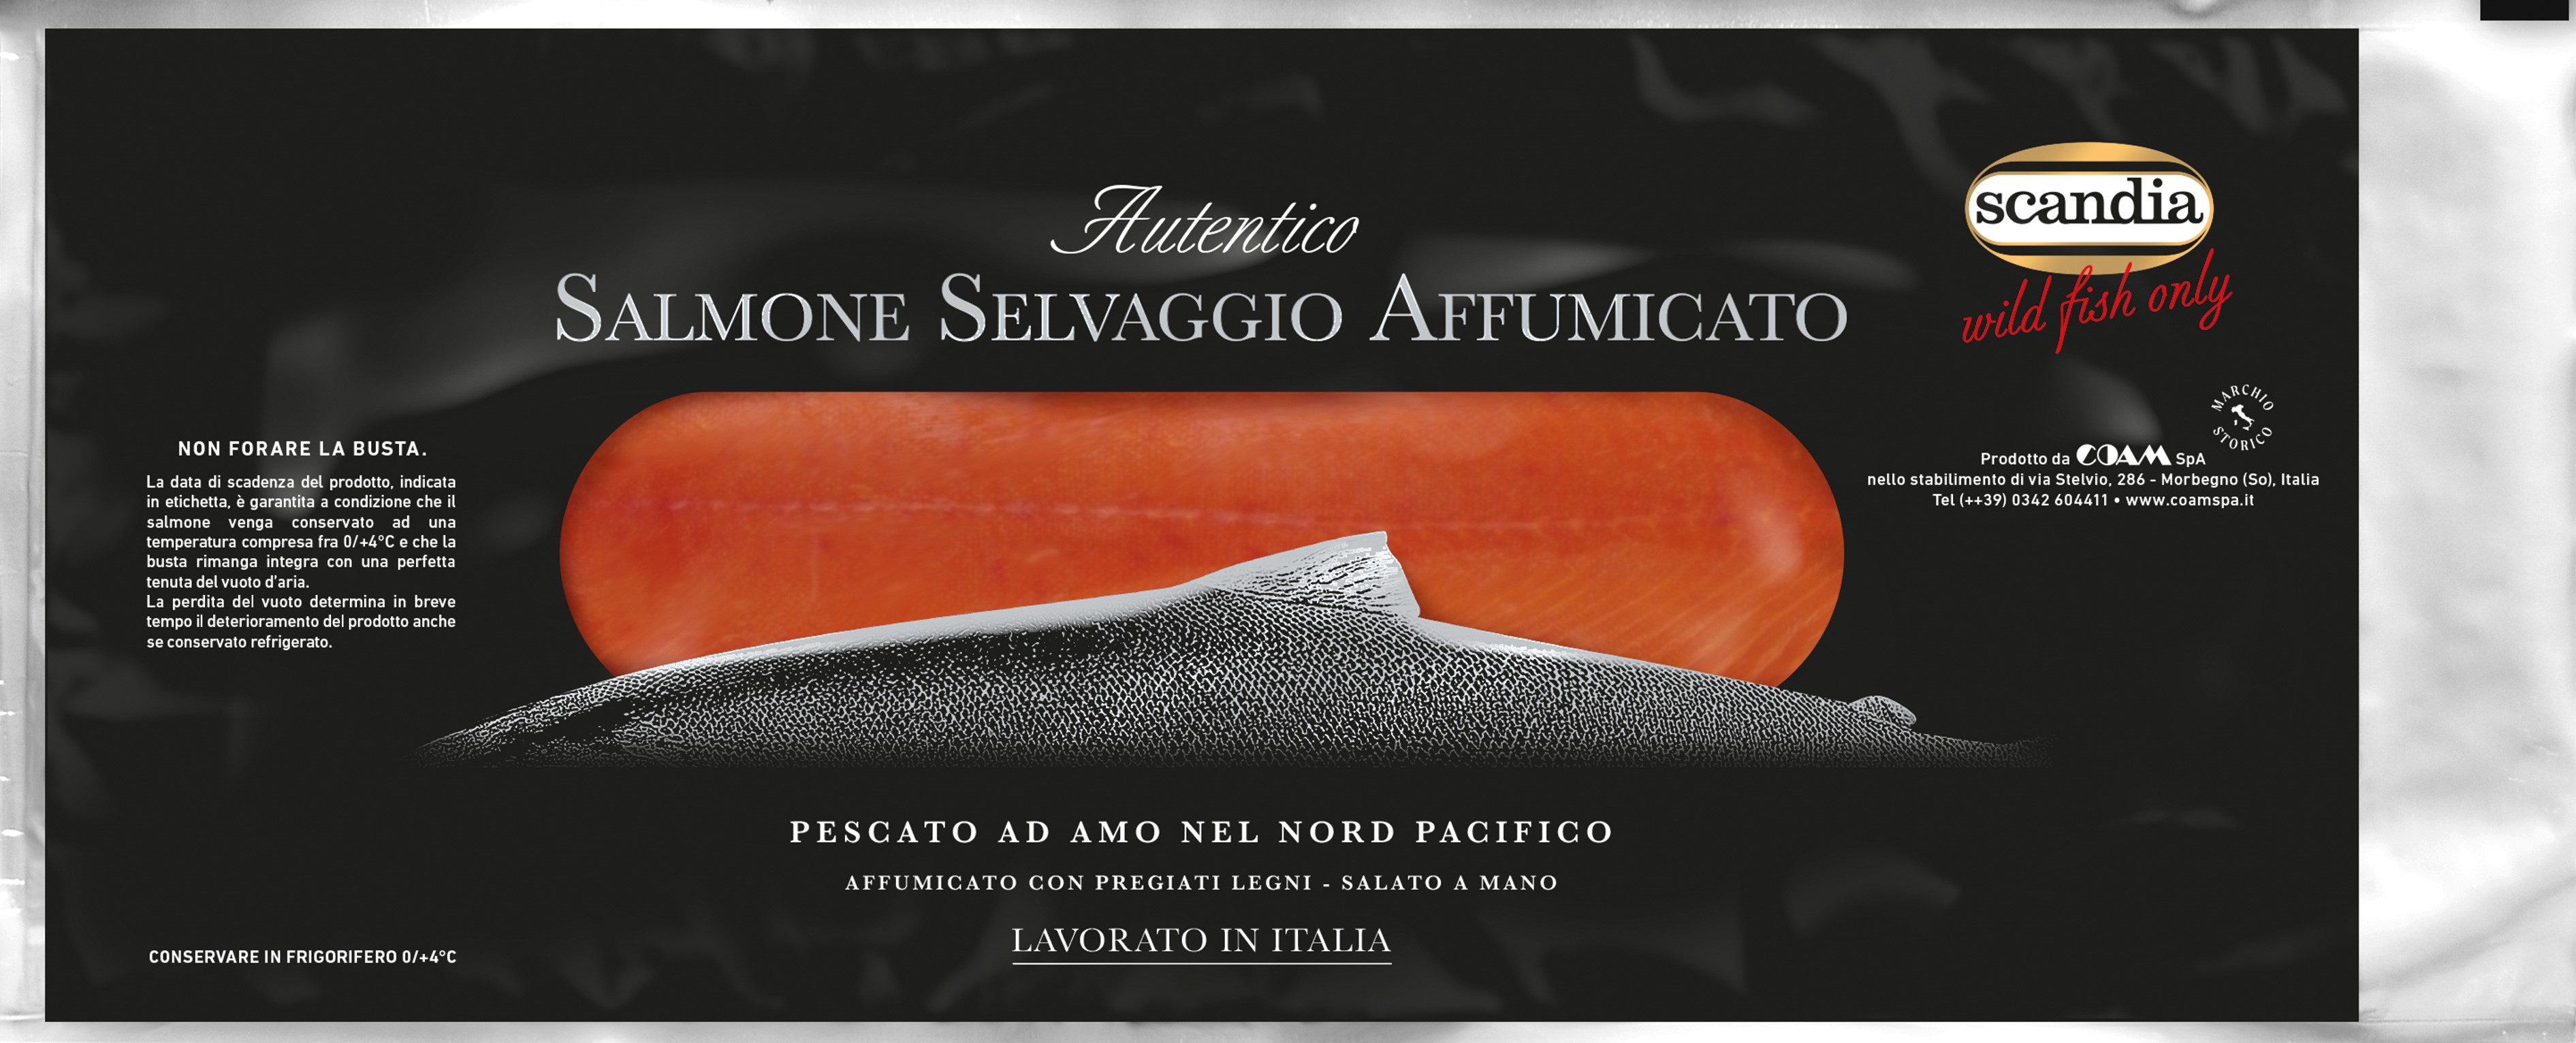 Salmone Argentato Selvaggio affumicato affettato - Busta 200g